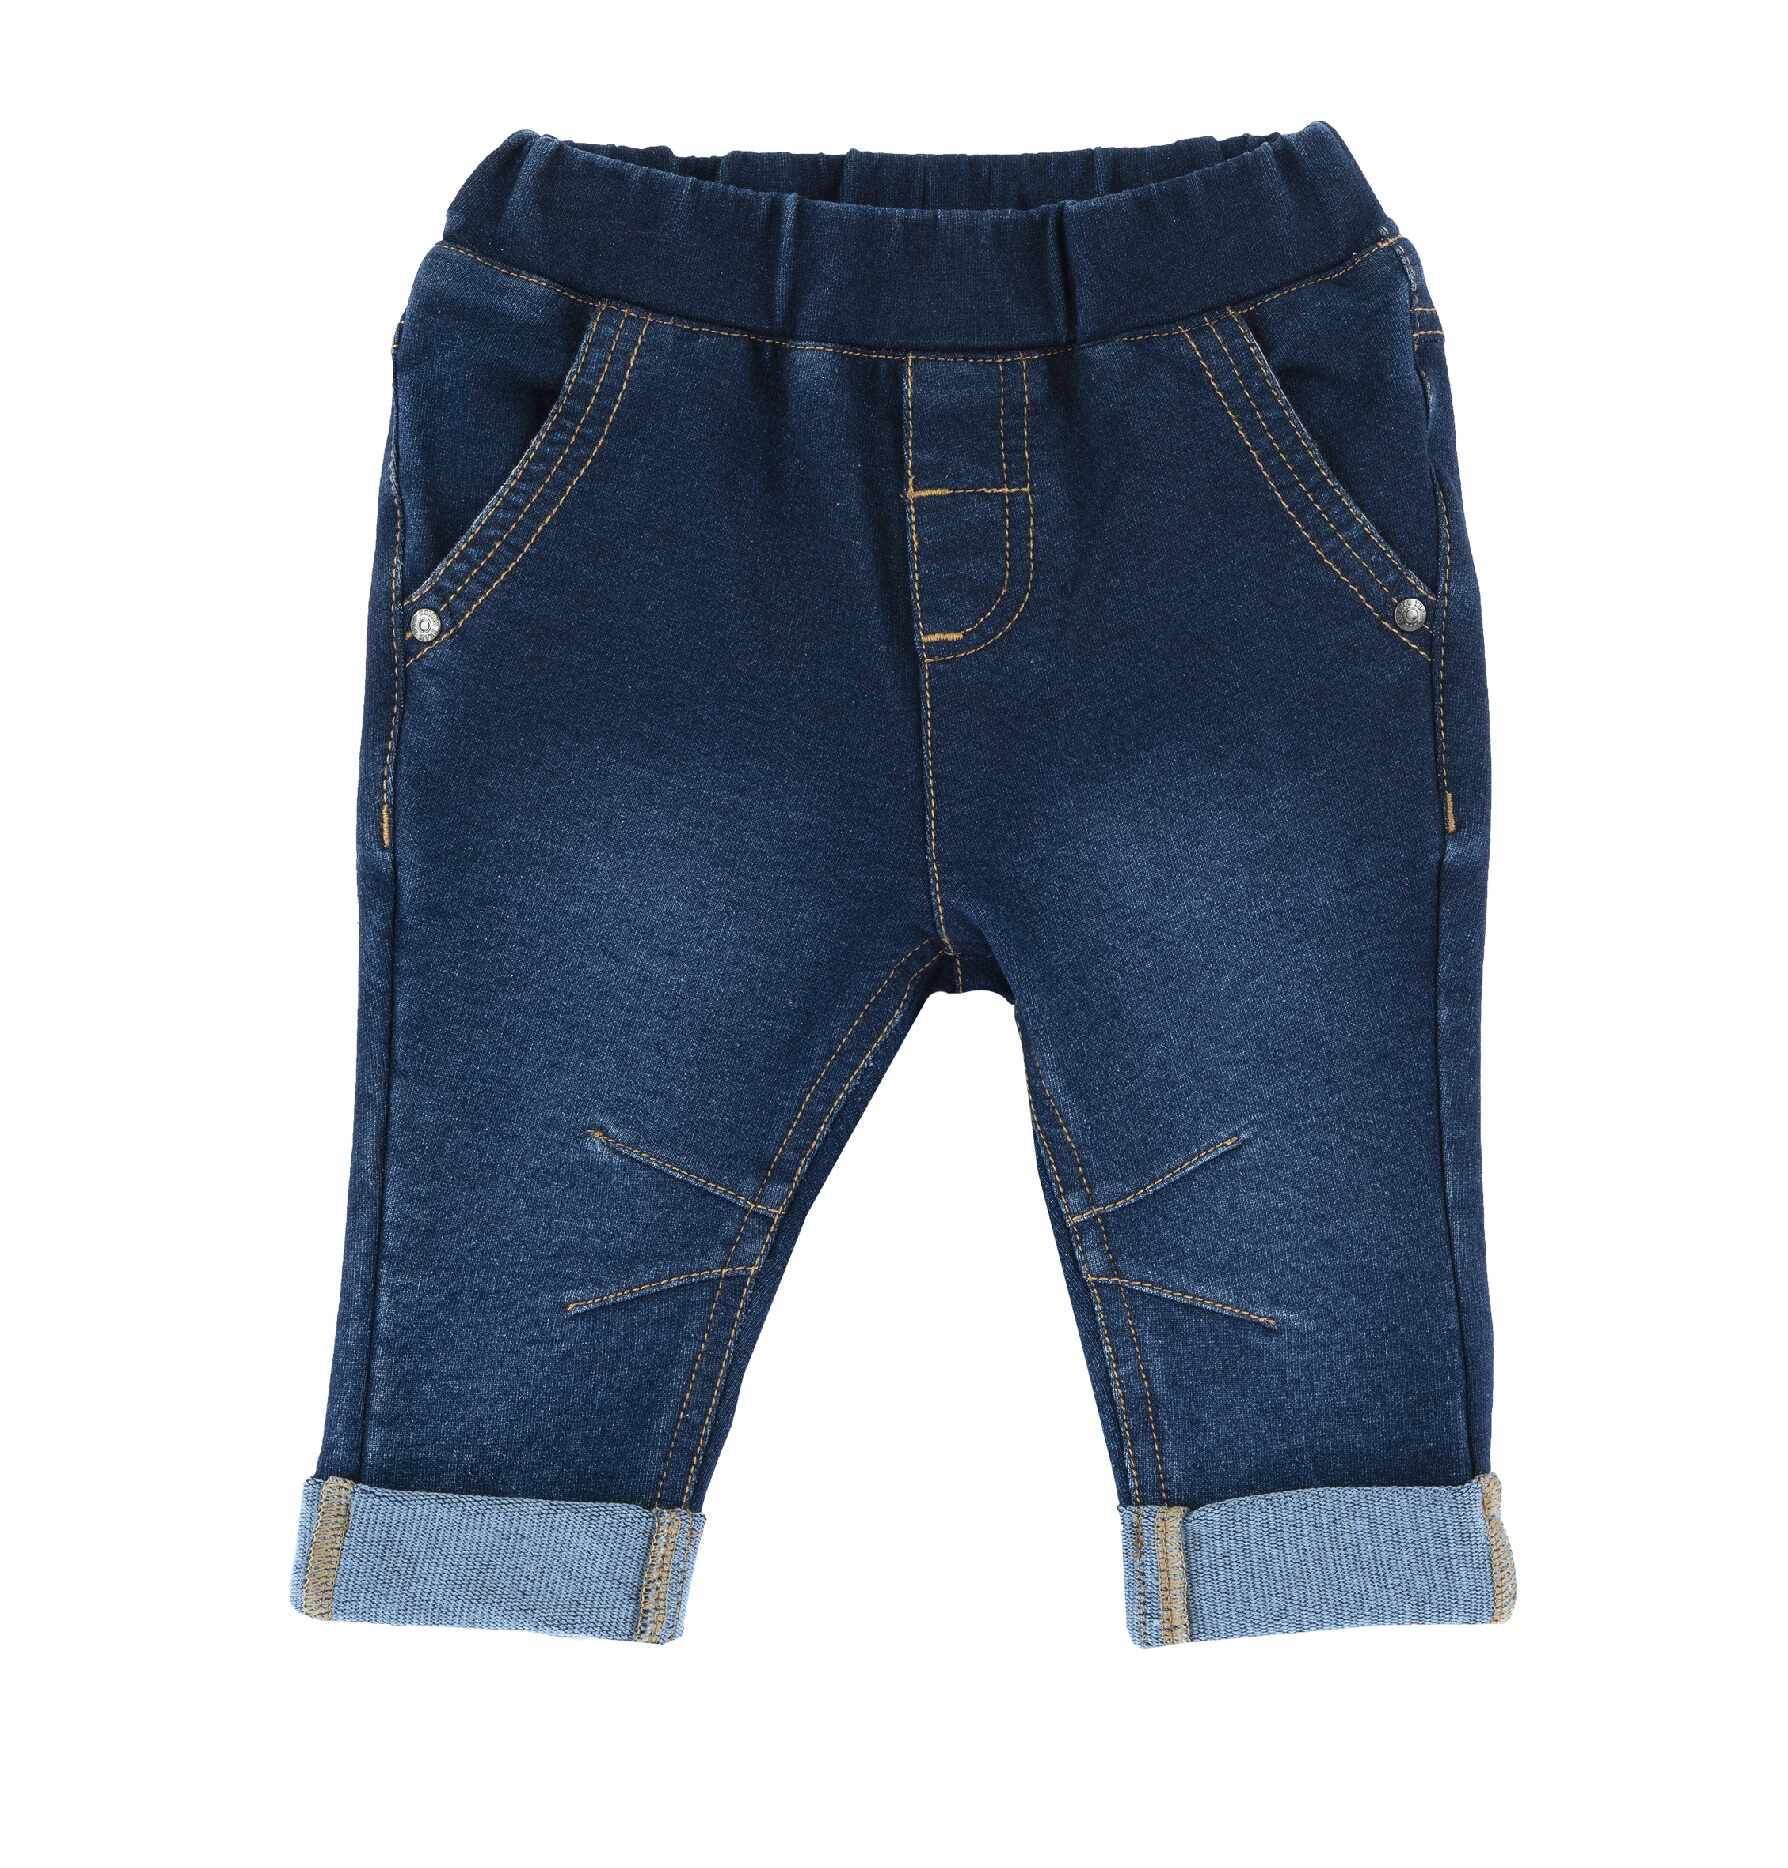 Pantaloni copii Chicco, albastru inchis, 08817-64MFCO